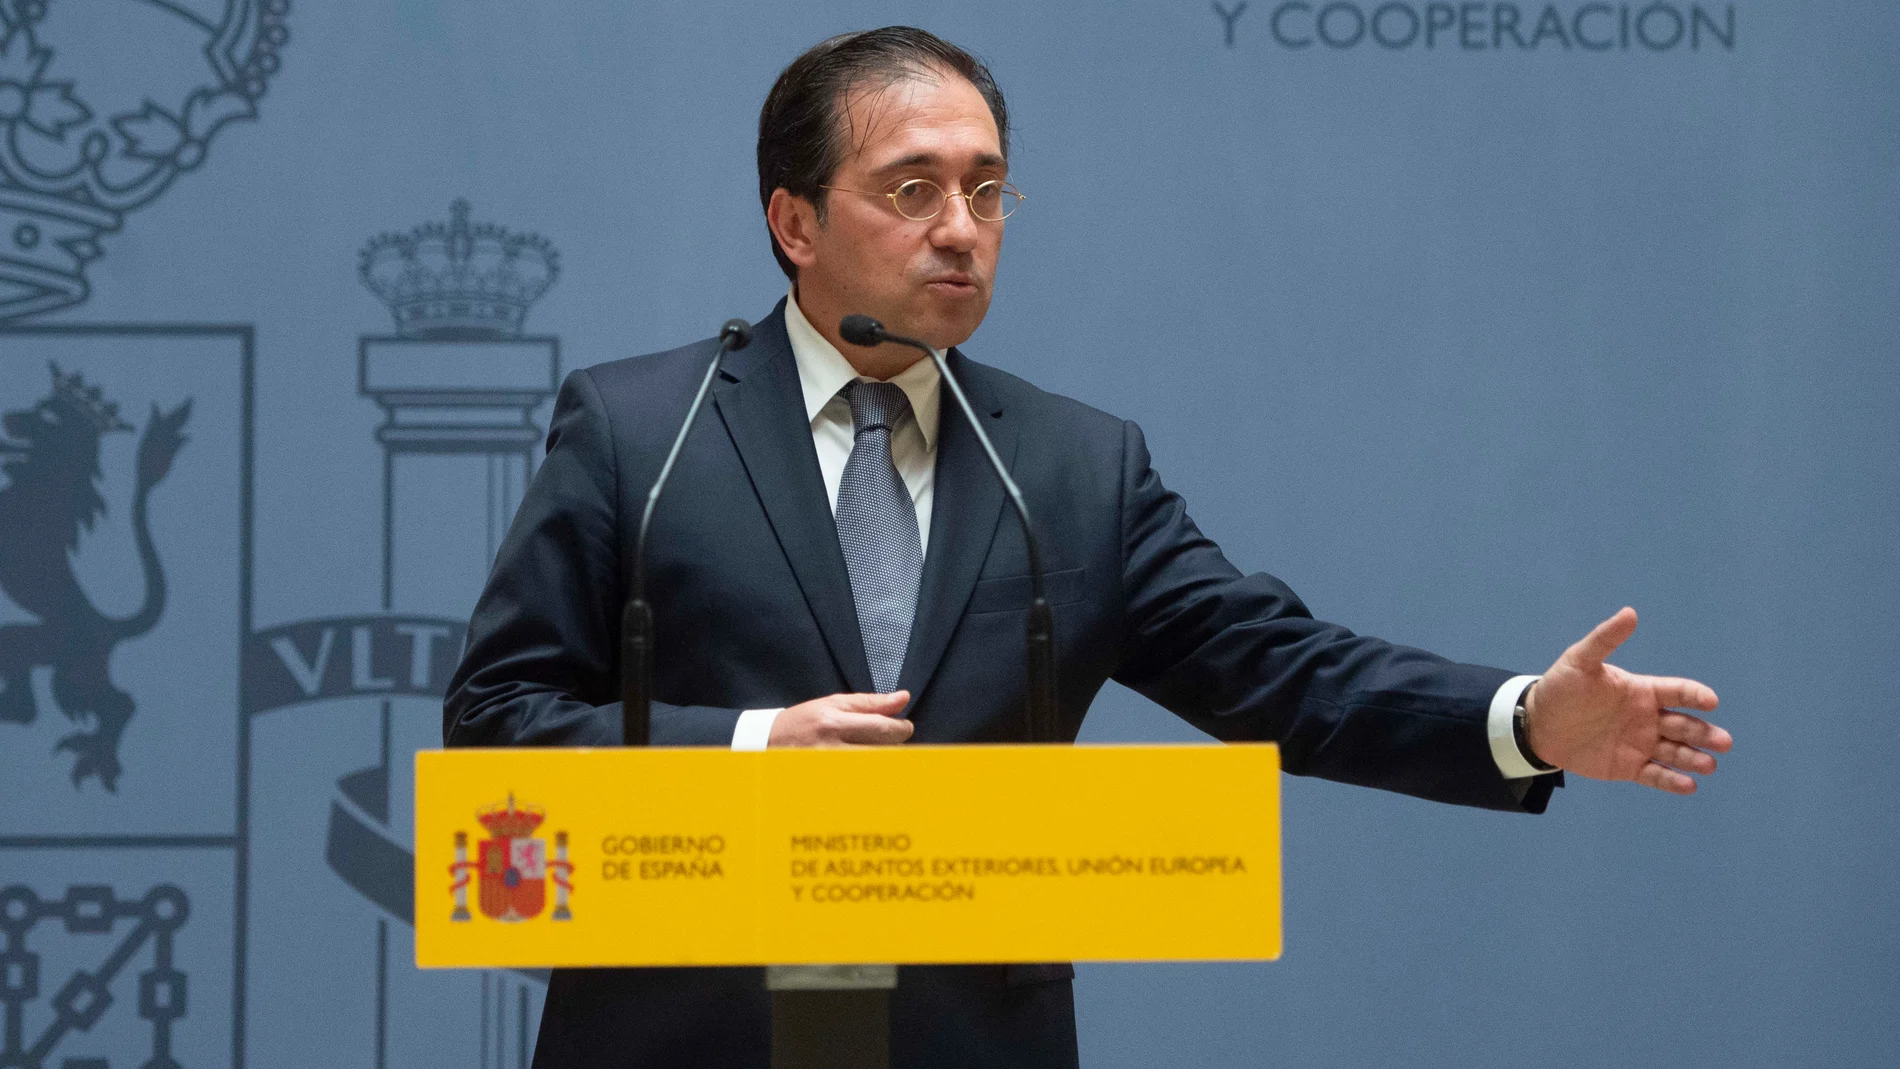 El ministro de Asuntos Exteriores, José Manuel Albares, sustituto de Arancha González Laya al frente de la diplomacia española